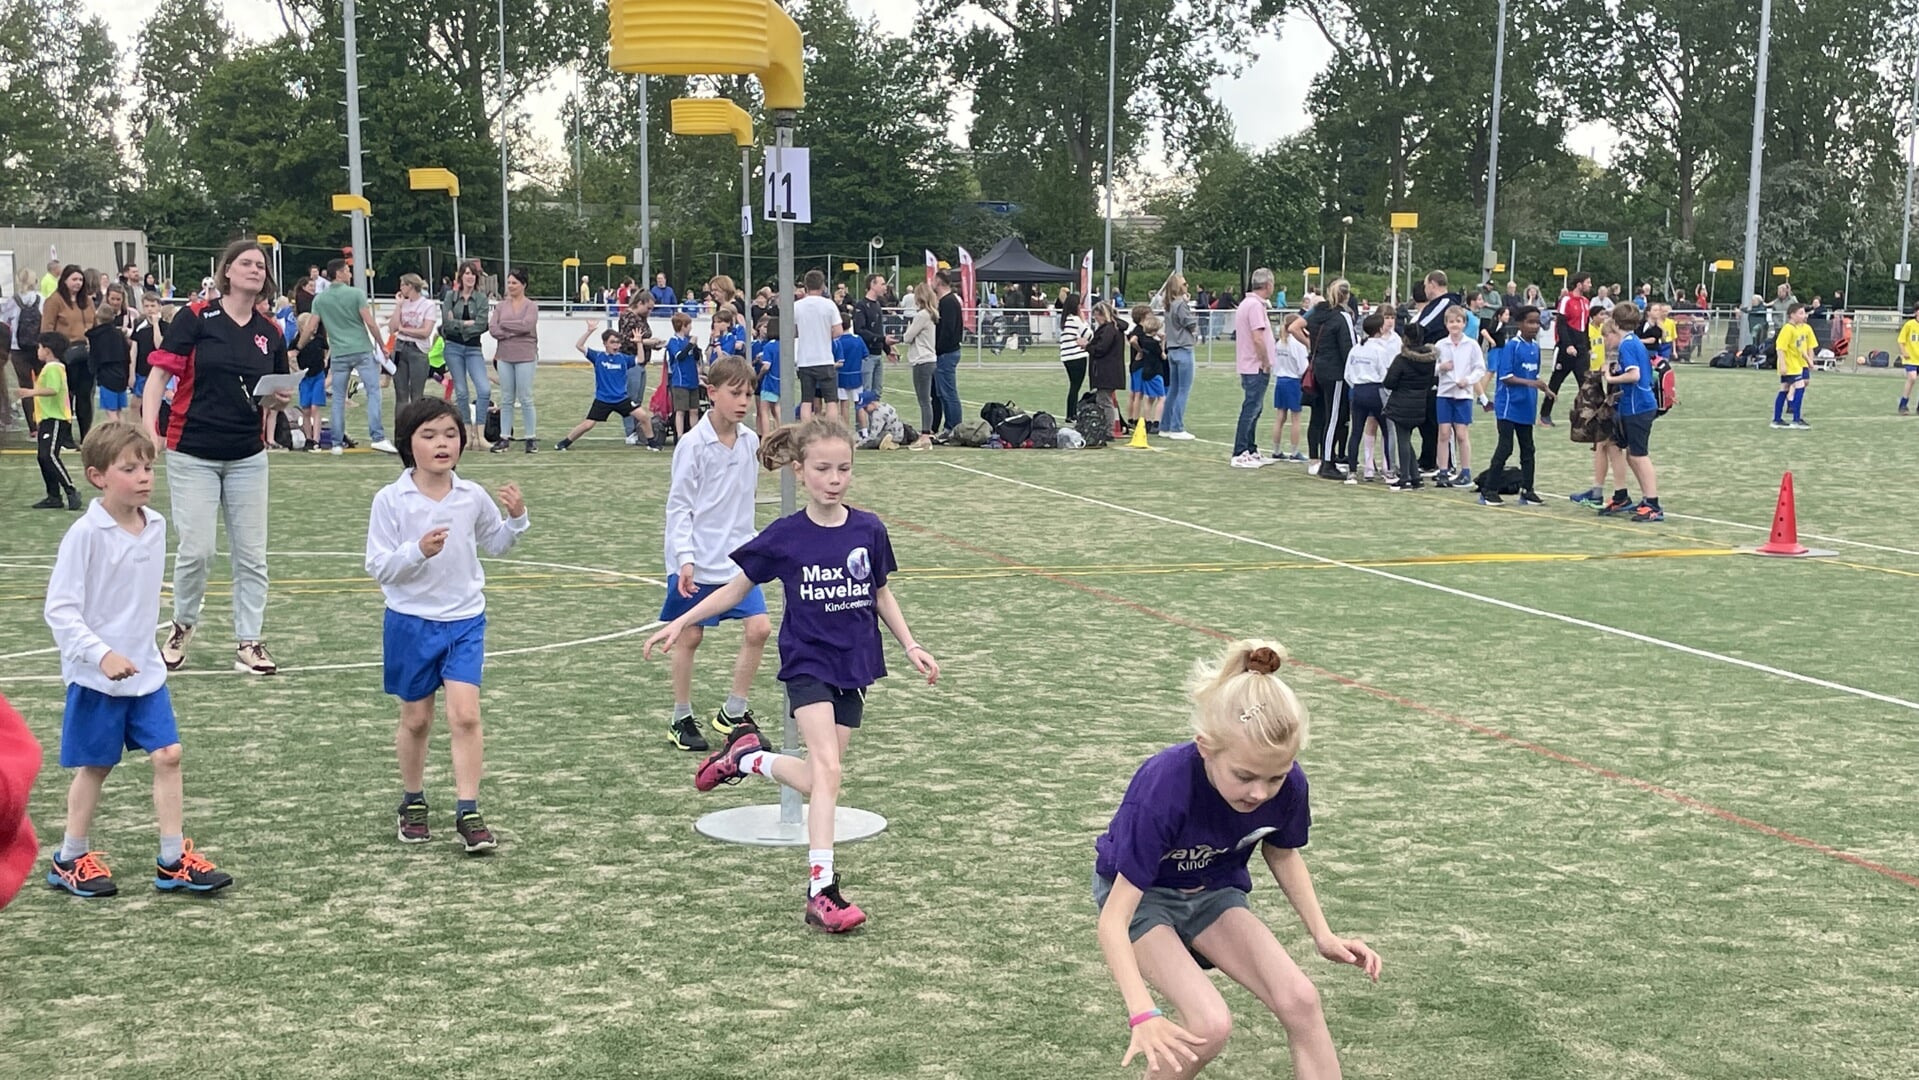 Al vele jaren organiseren de Delftse korfbalclubs het Schoolkorfbal Toernooi voor de Delftse jeugd. Dit jaar staat het toernooi gepland op woensdag 5 juni van 13.30 uur tot 18.00 uur op het complex van Fortuna.